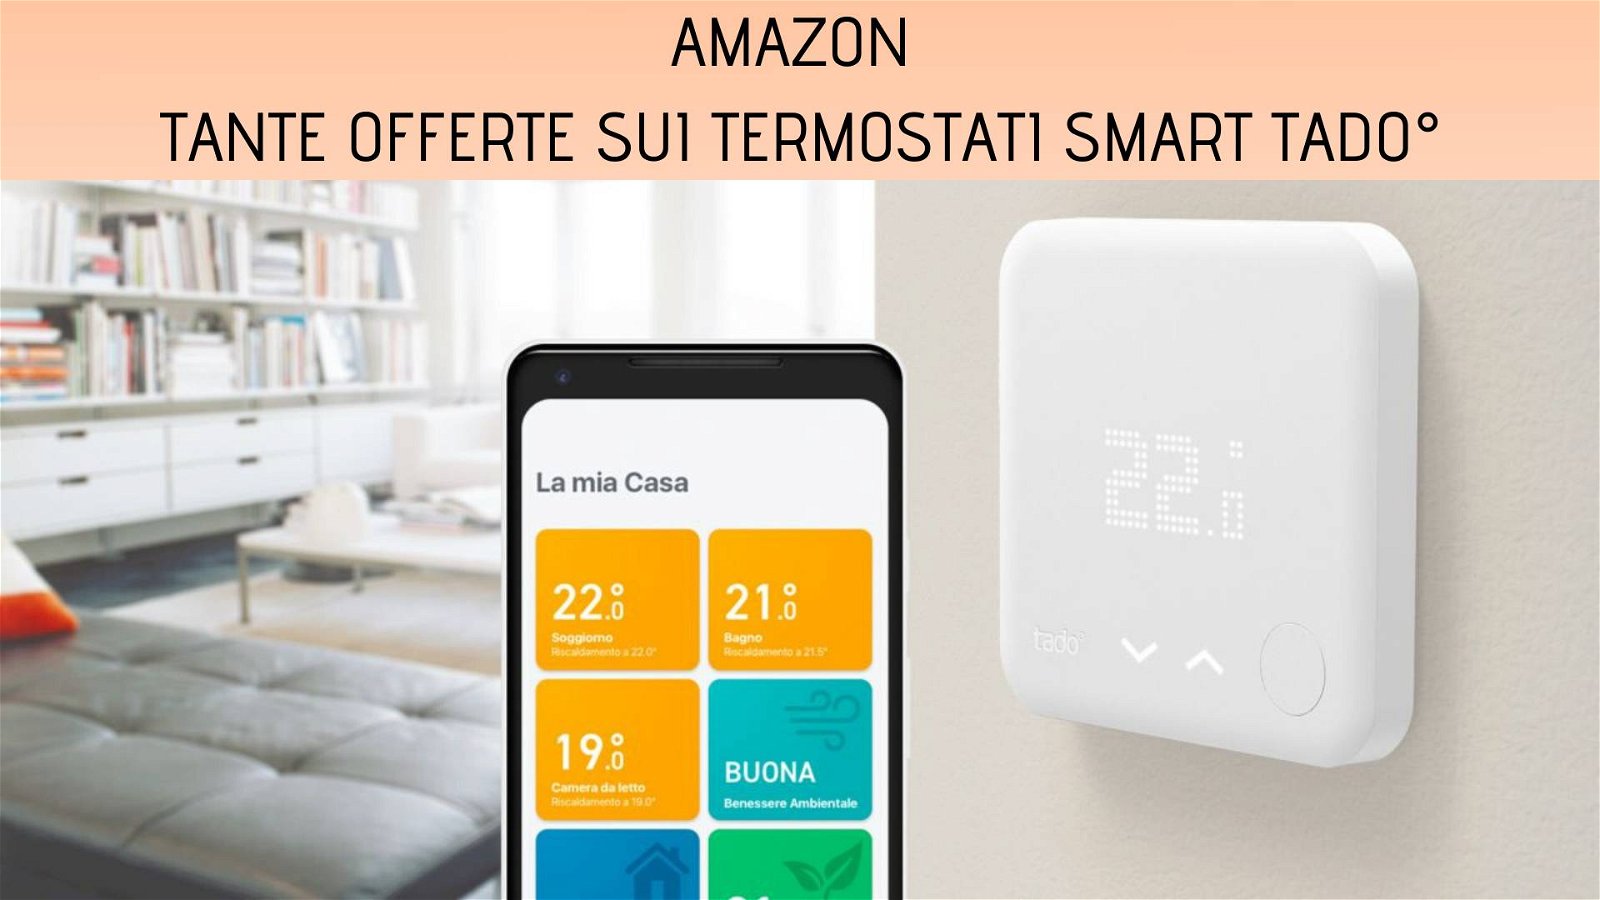 Immagine di Tado: tante offerte su termostati smart su Amazon